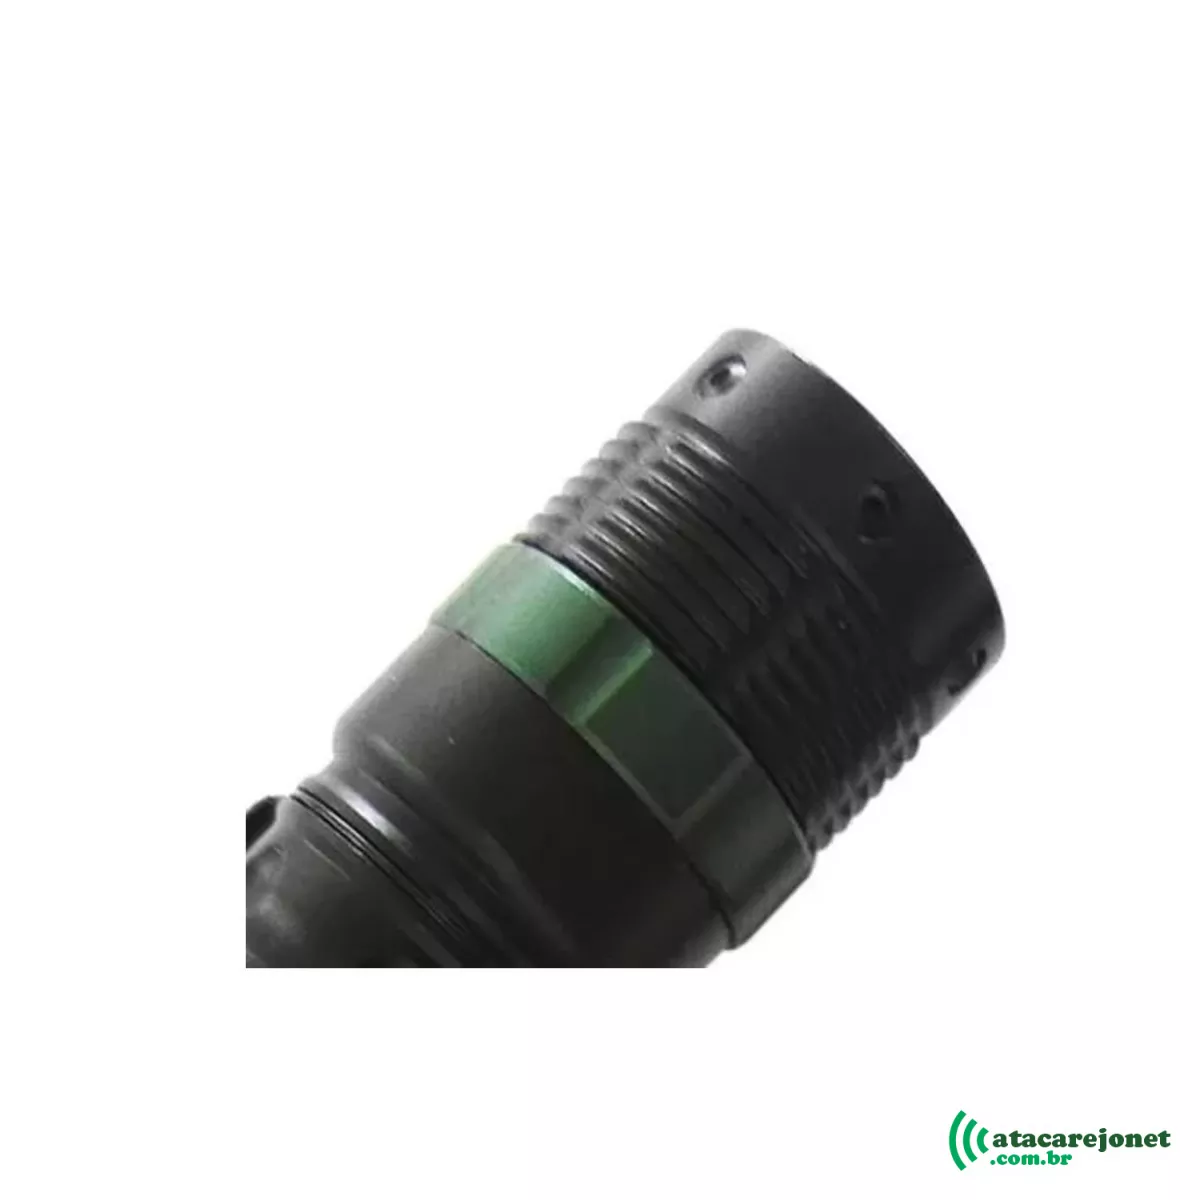 Lanterna Tática de LED Preta Recarregável Modelo LK-170B - Luatek